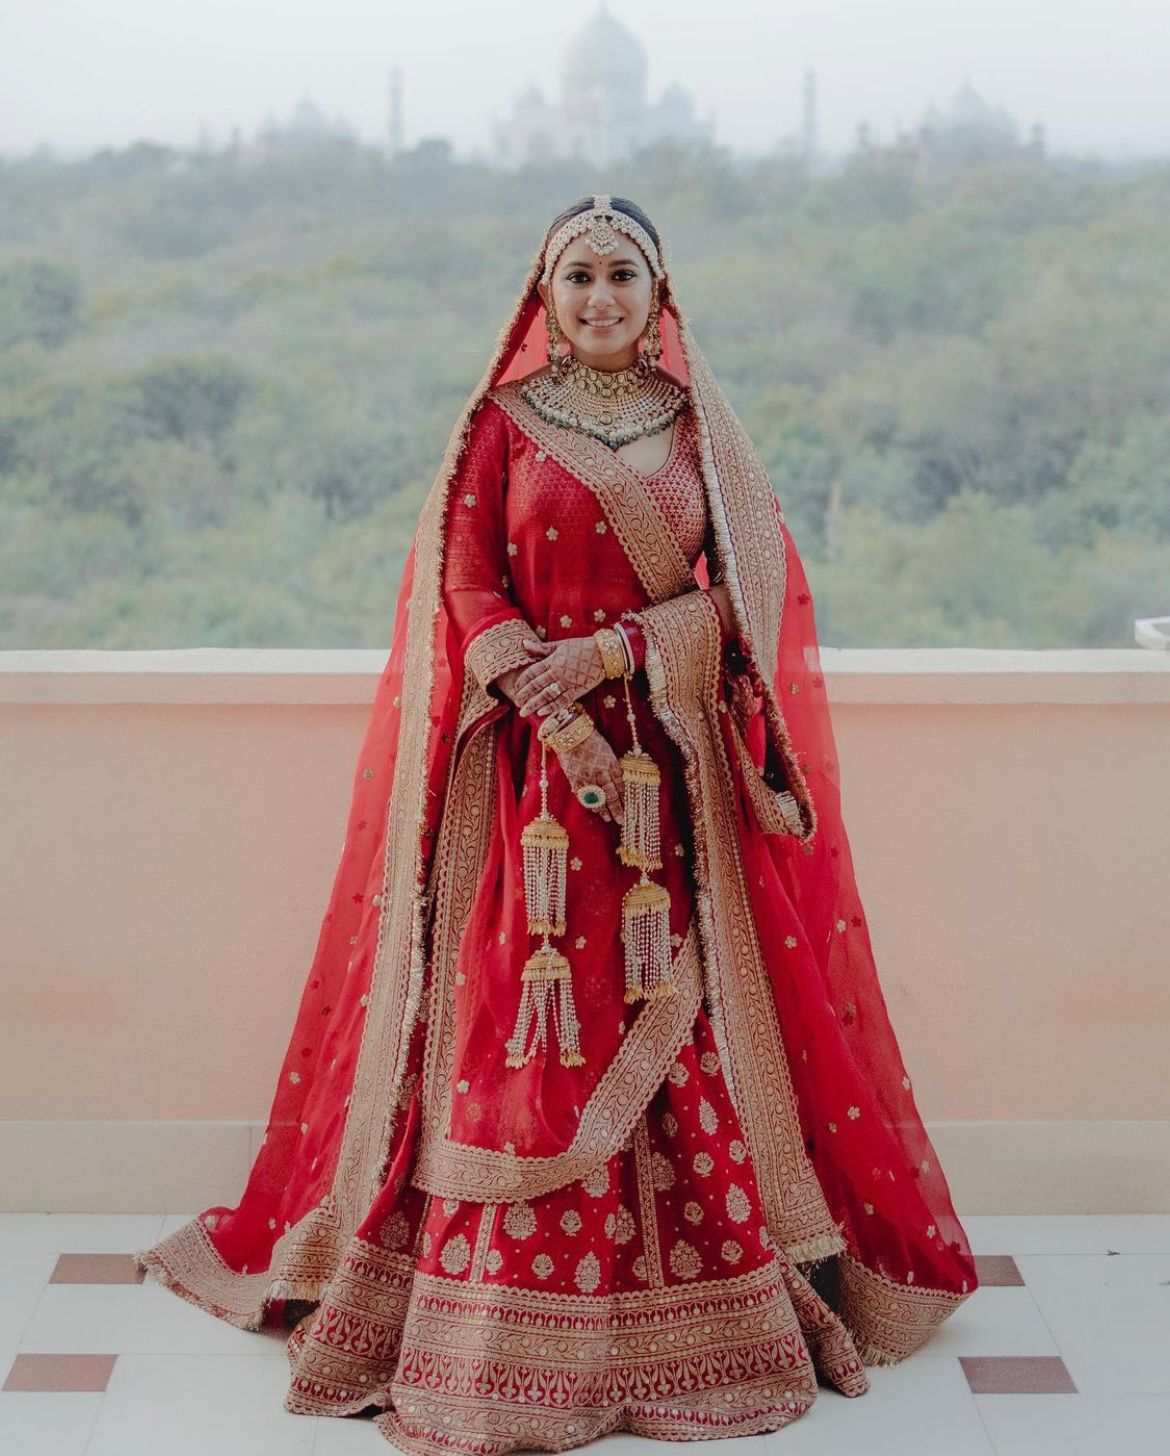 Luv Ranjan's Bride, Alisha Vaid Donned A Red Sabyasachi Lehenga With ...